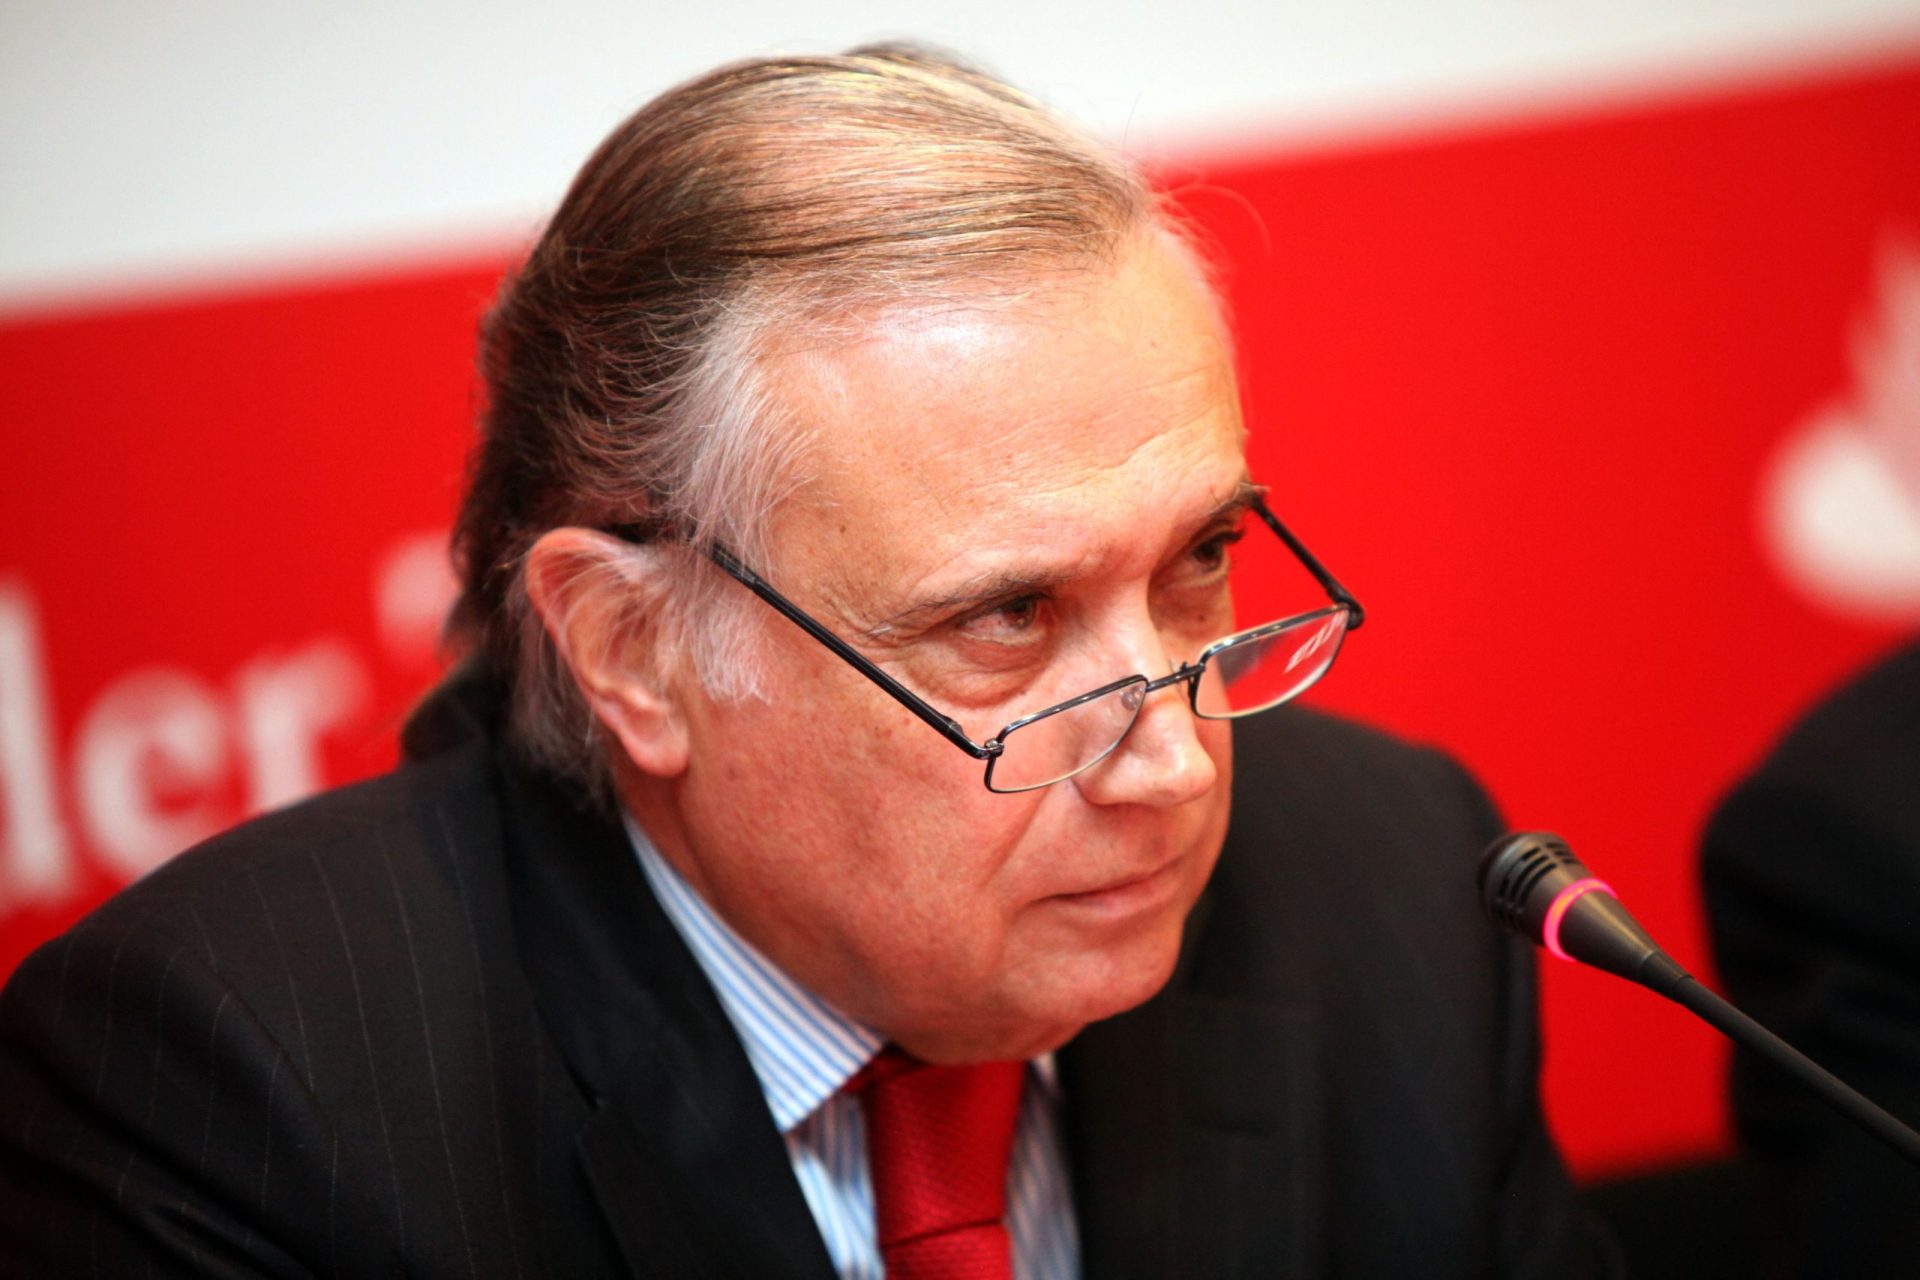 Morreu Vieira Monteiro, presidente do Santander Totta, devido à covid-19